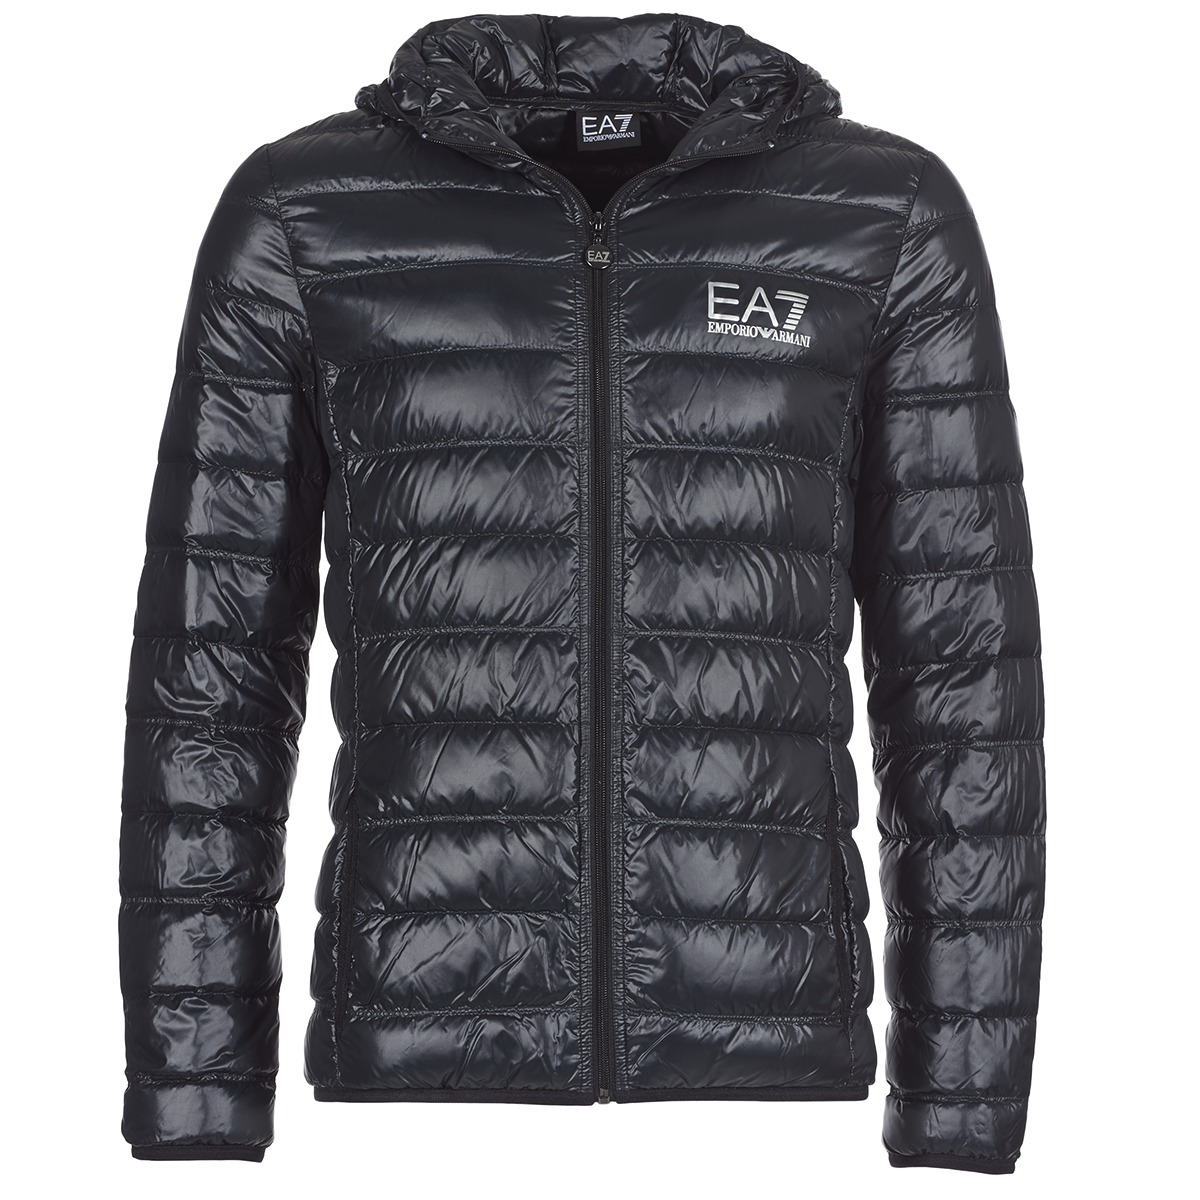 EA7 EMPORIO ARMANI Jackor – Sportigt och elegant mode för hela året